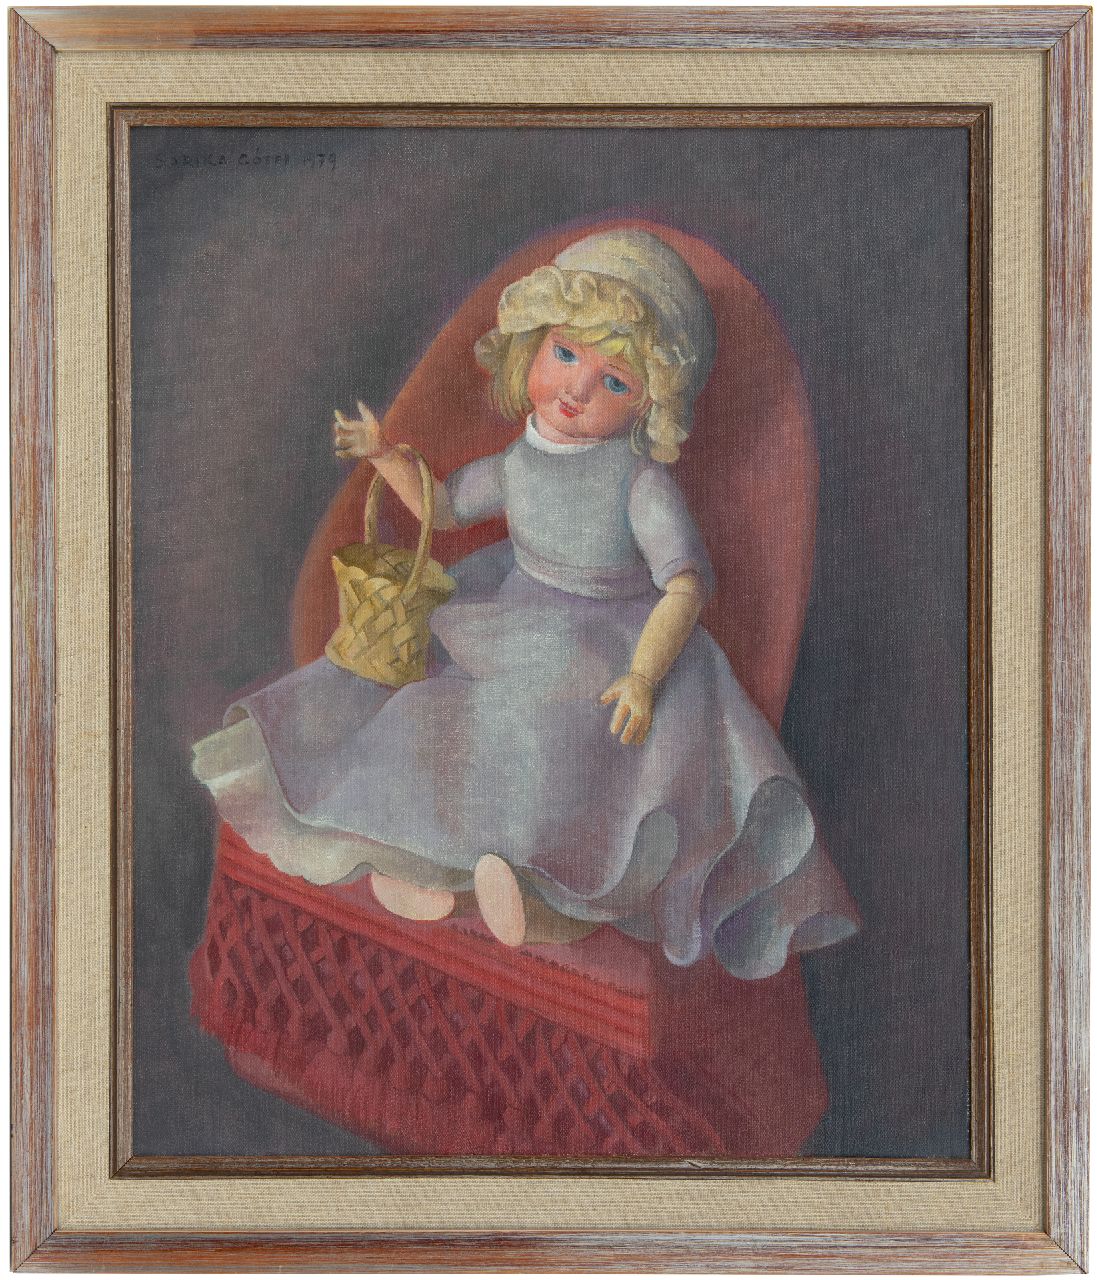 Góth C.  | Charlotte 'Sarika' Góth | Schilderijen te koop aangeboden | Pop op een stoel, olieverf op doek 58,2 x 47,2 cm, gesigneerd linksboven en gedateerd 1979